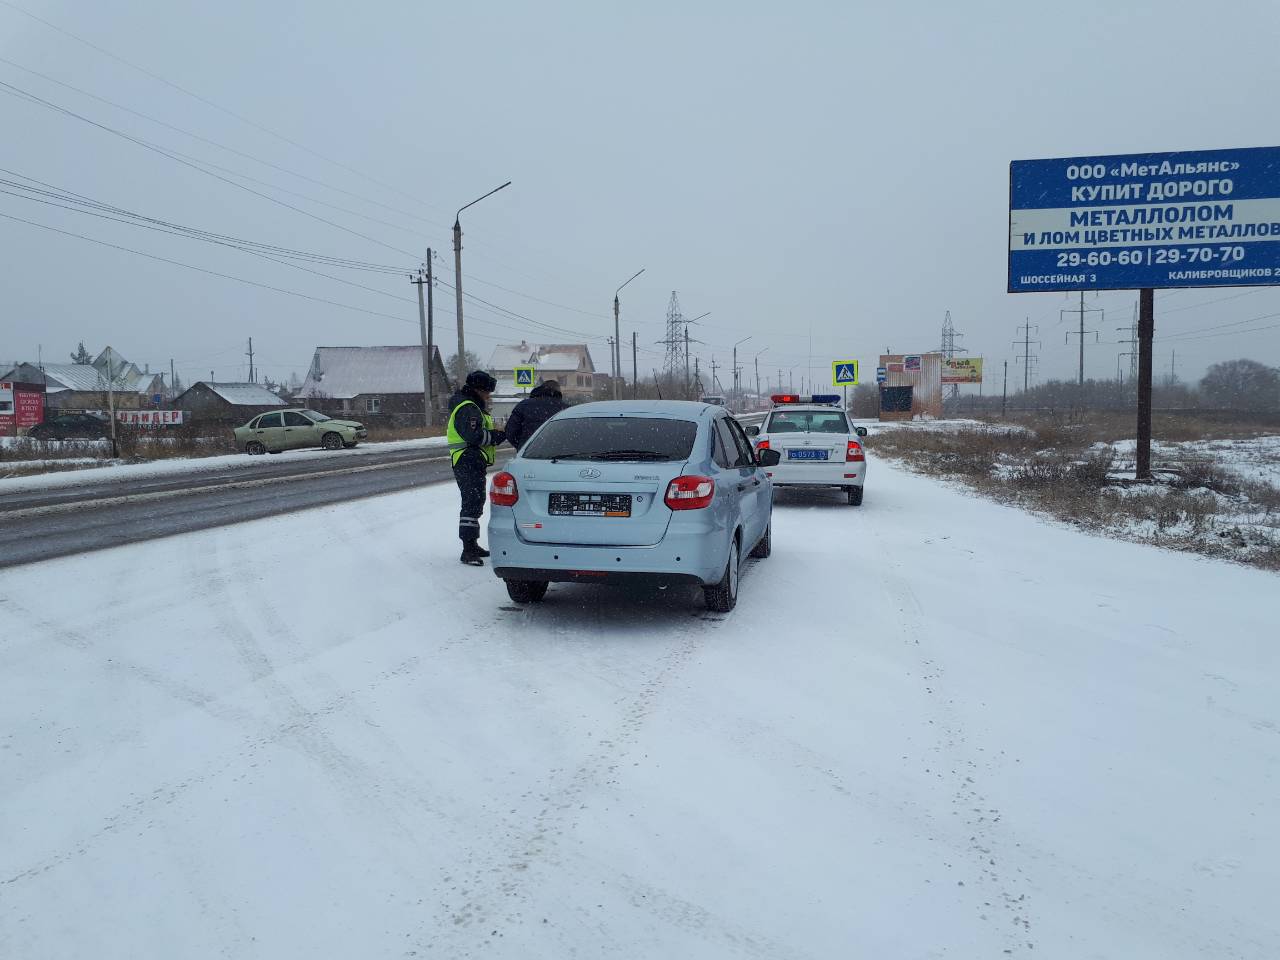 На дороге образовался снежный накат, сильно снижена видимость